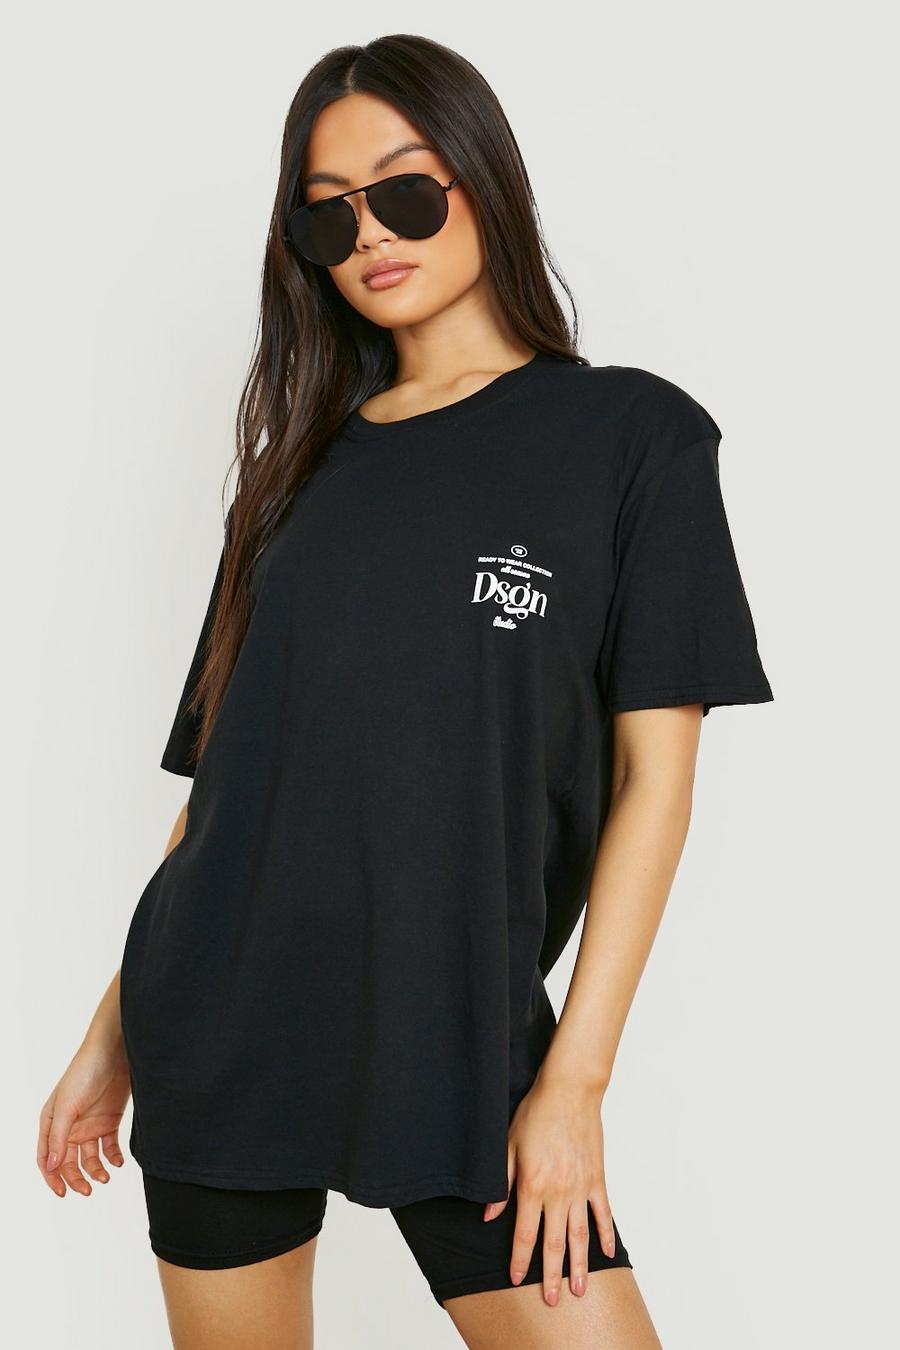 T-Shirt mit Dsgn Taschen-Print, Black